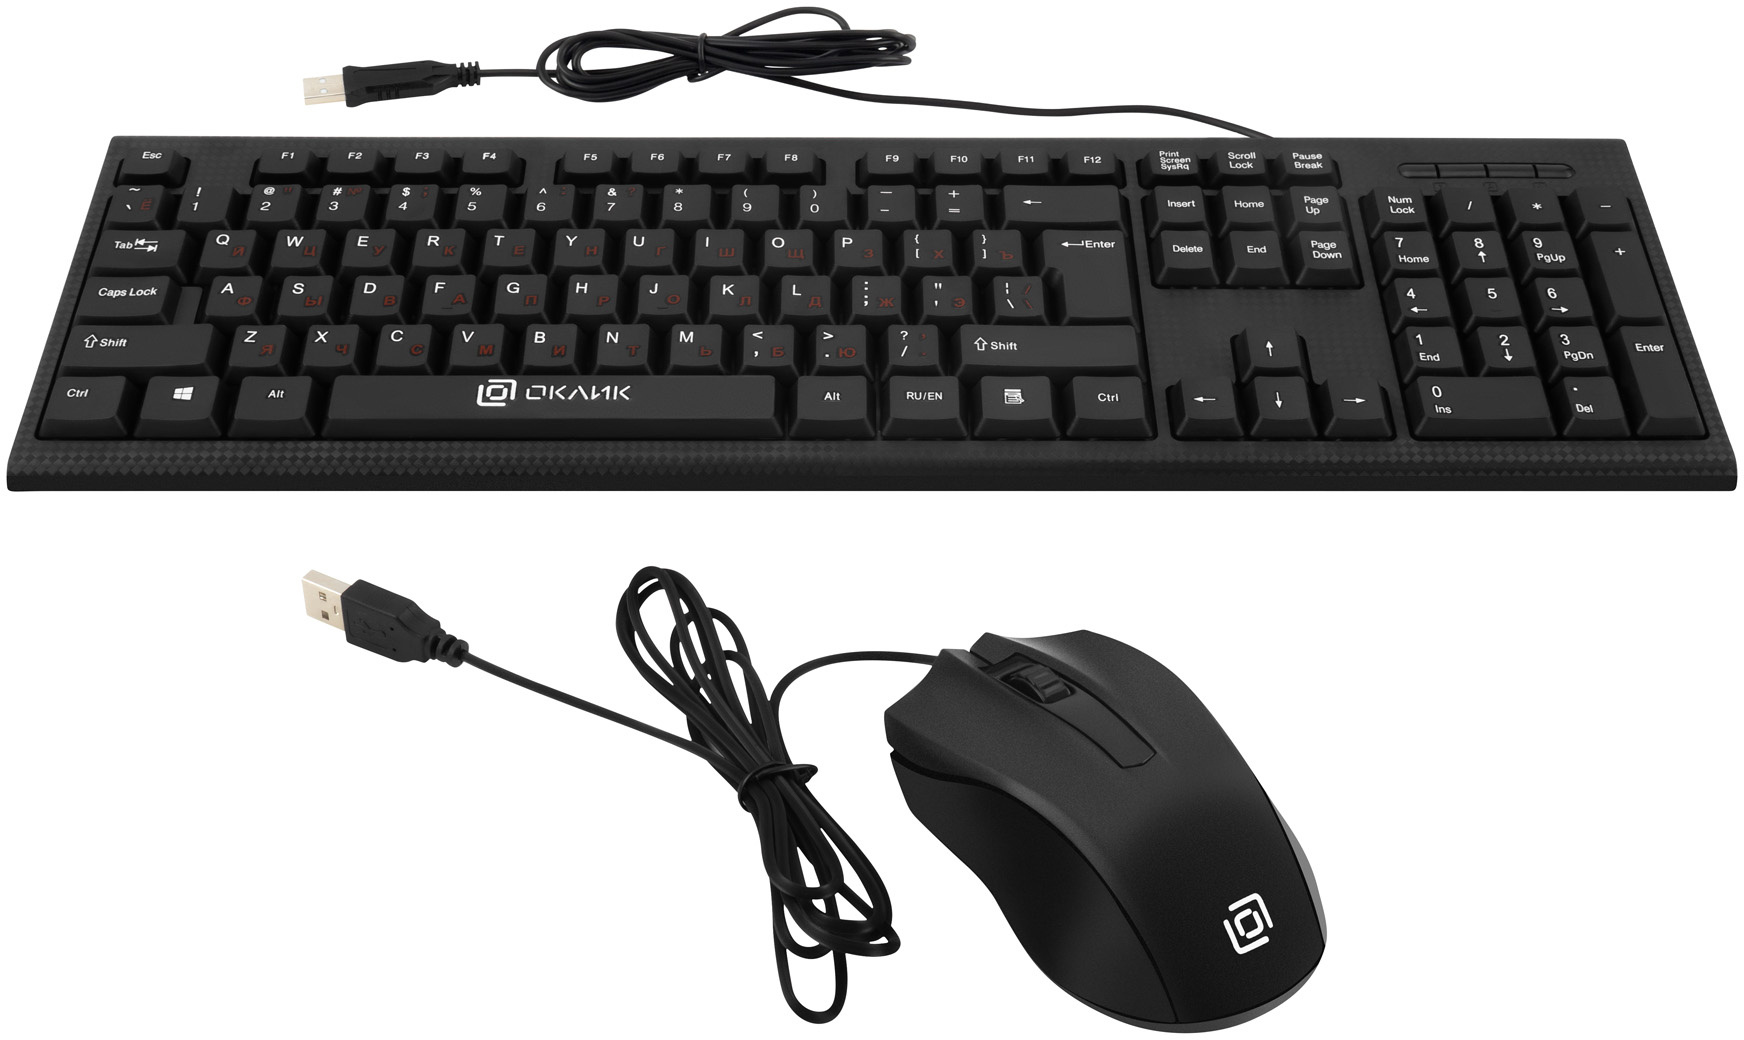 Клавиатура+мышь Oklick 620M клав:черный мышь:черный USB